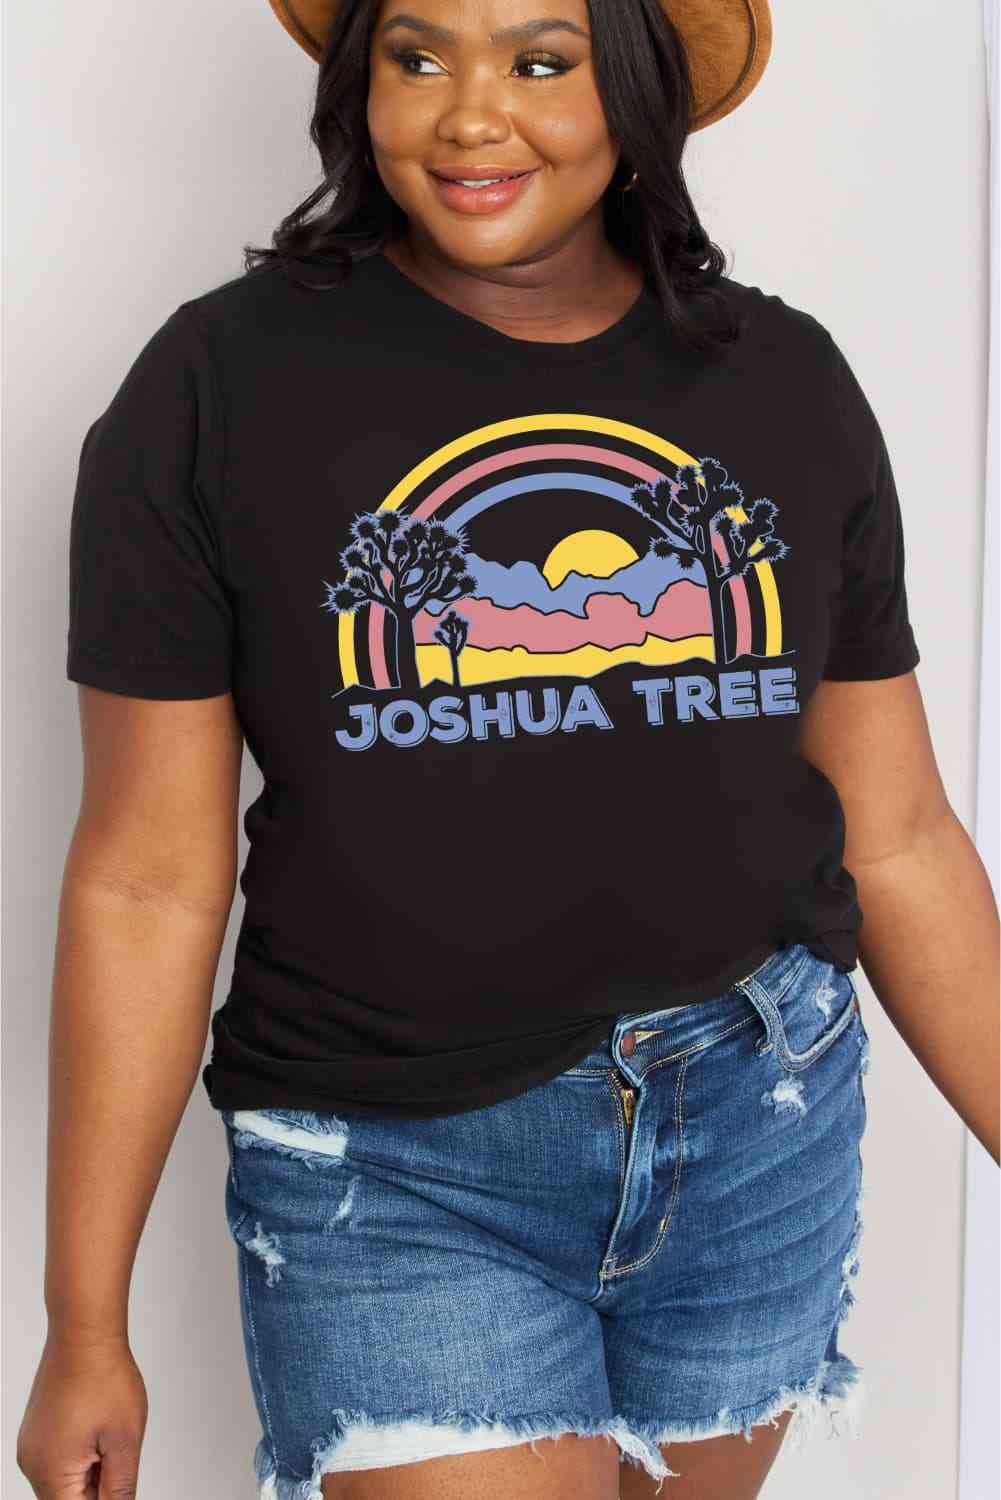 Camiseta de algodón con estampado JOSHUA TREE de tamaño completo de Simply Love